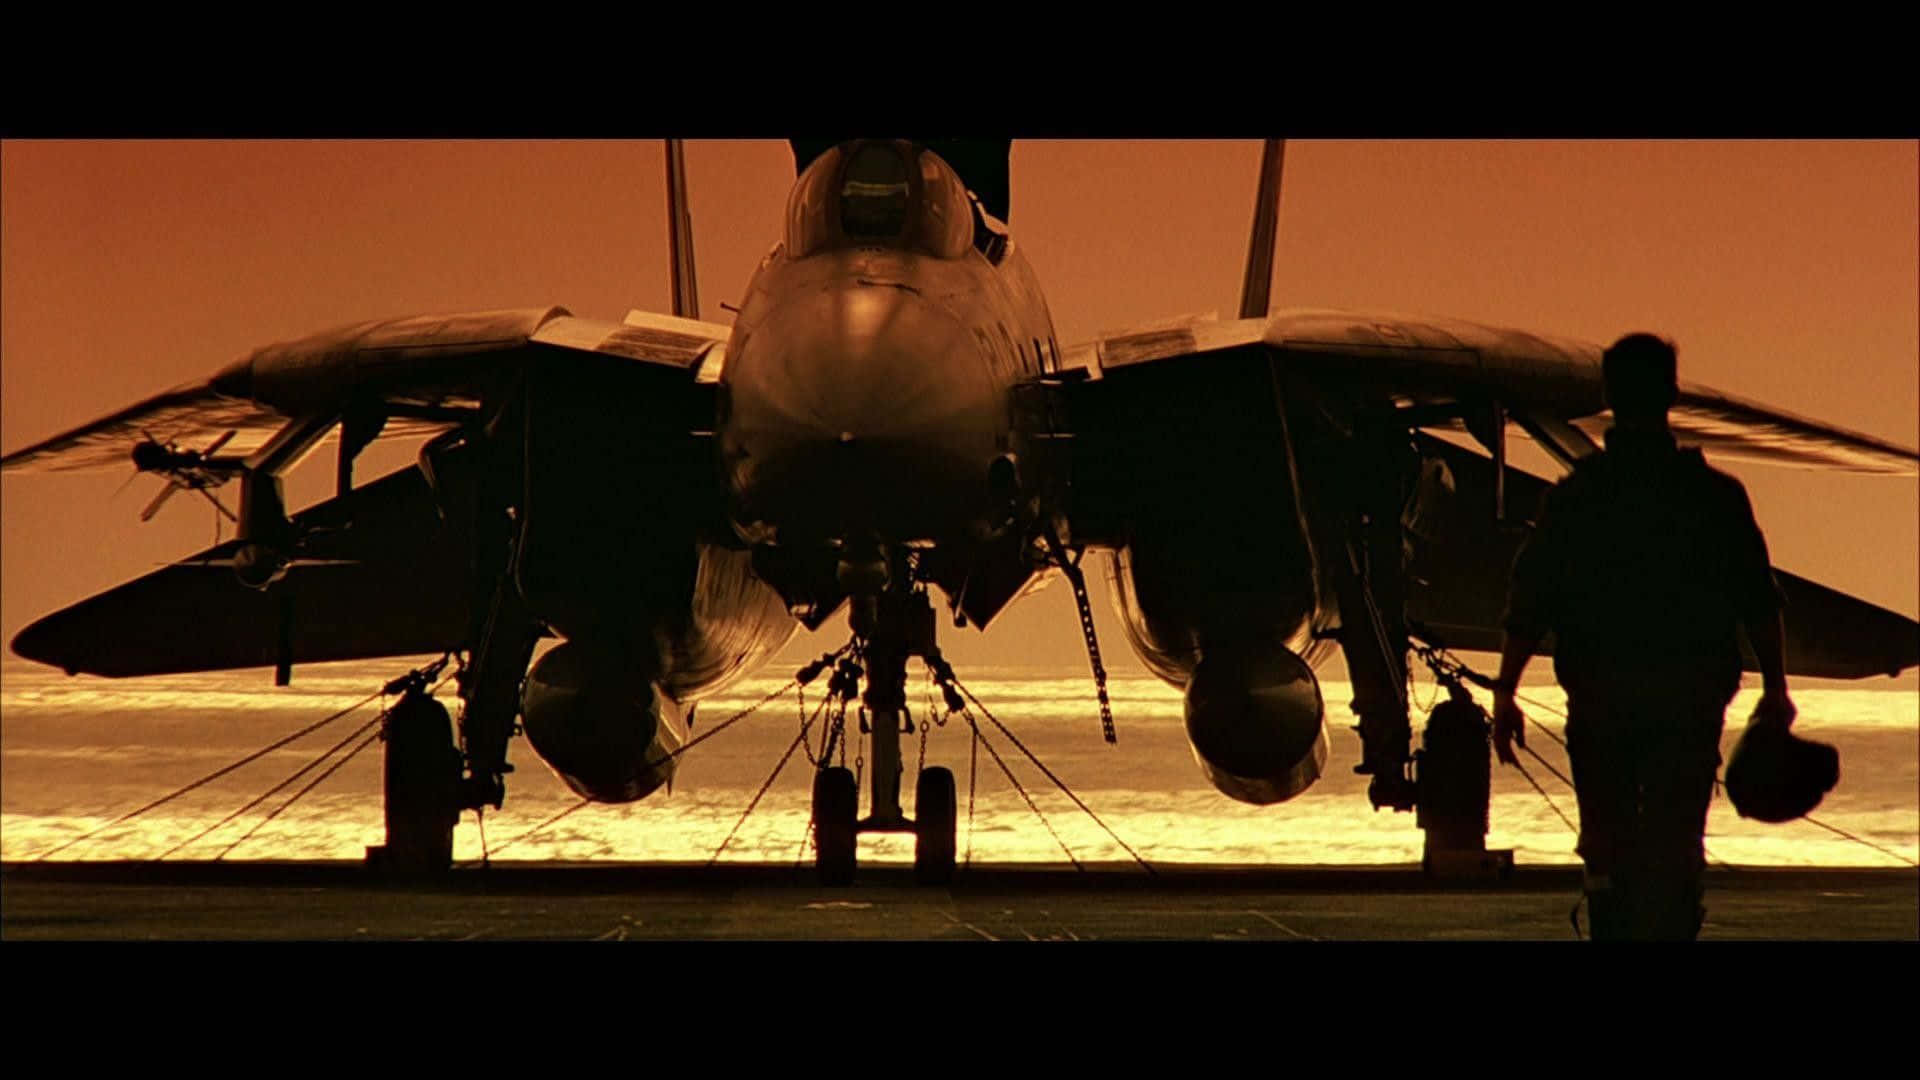 Top Gun F1 Fighter Jet Background